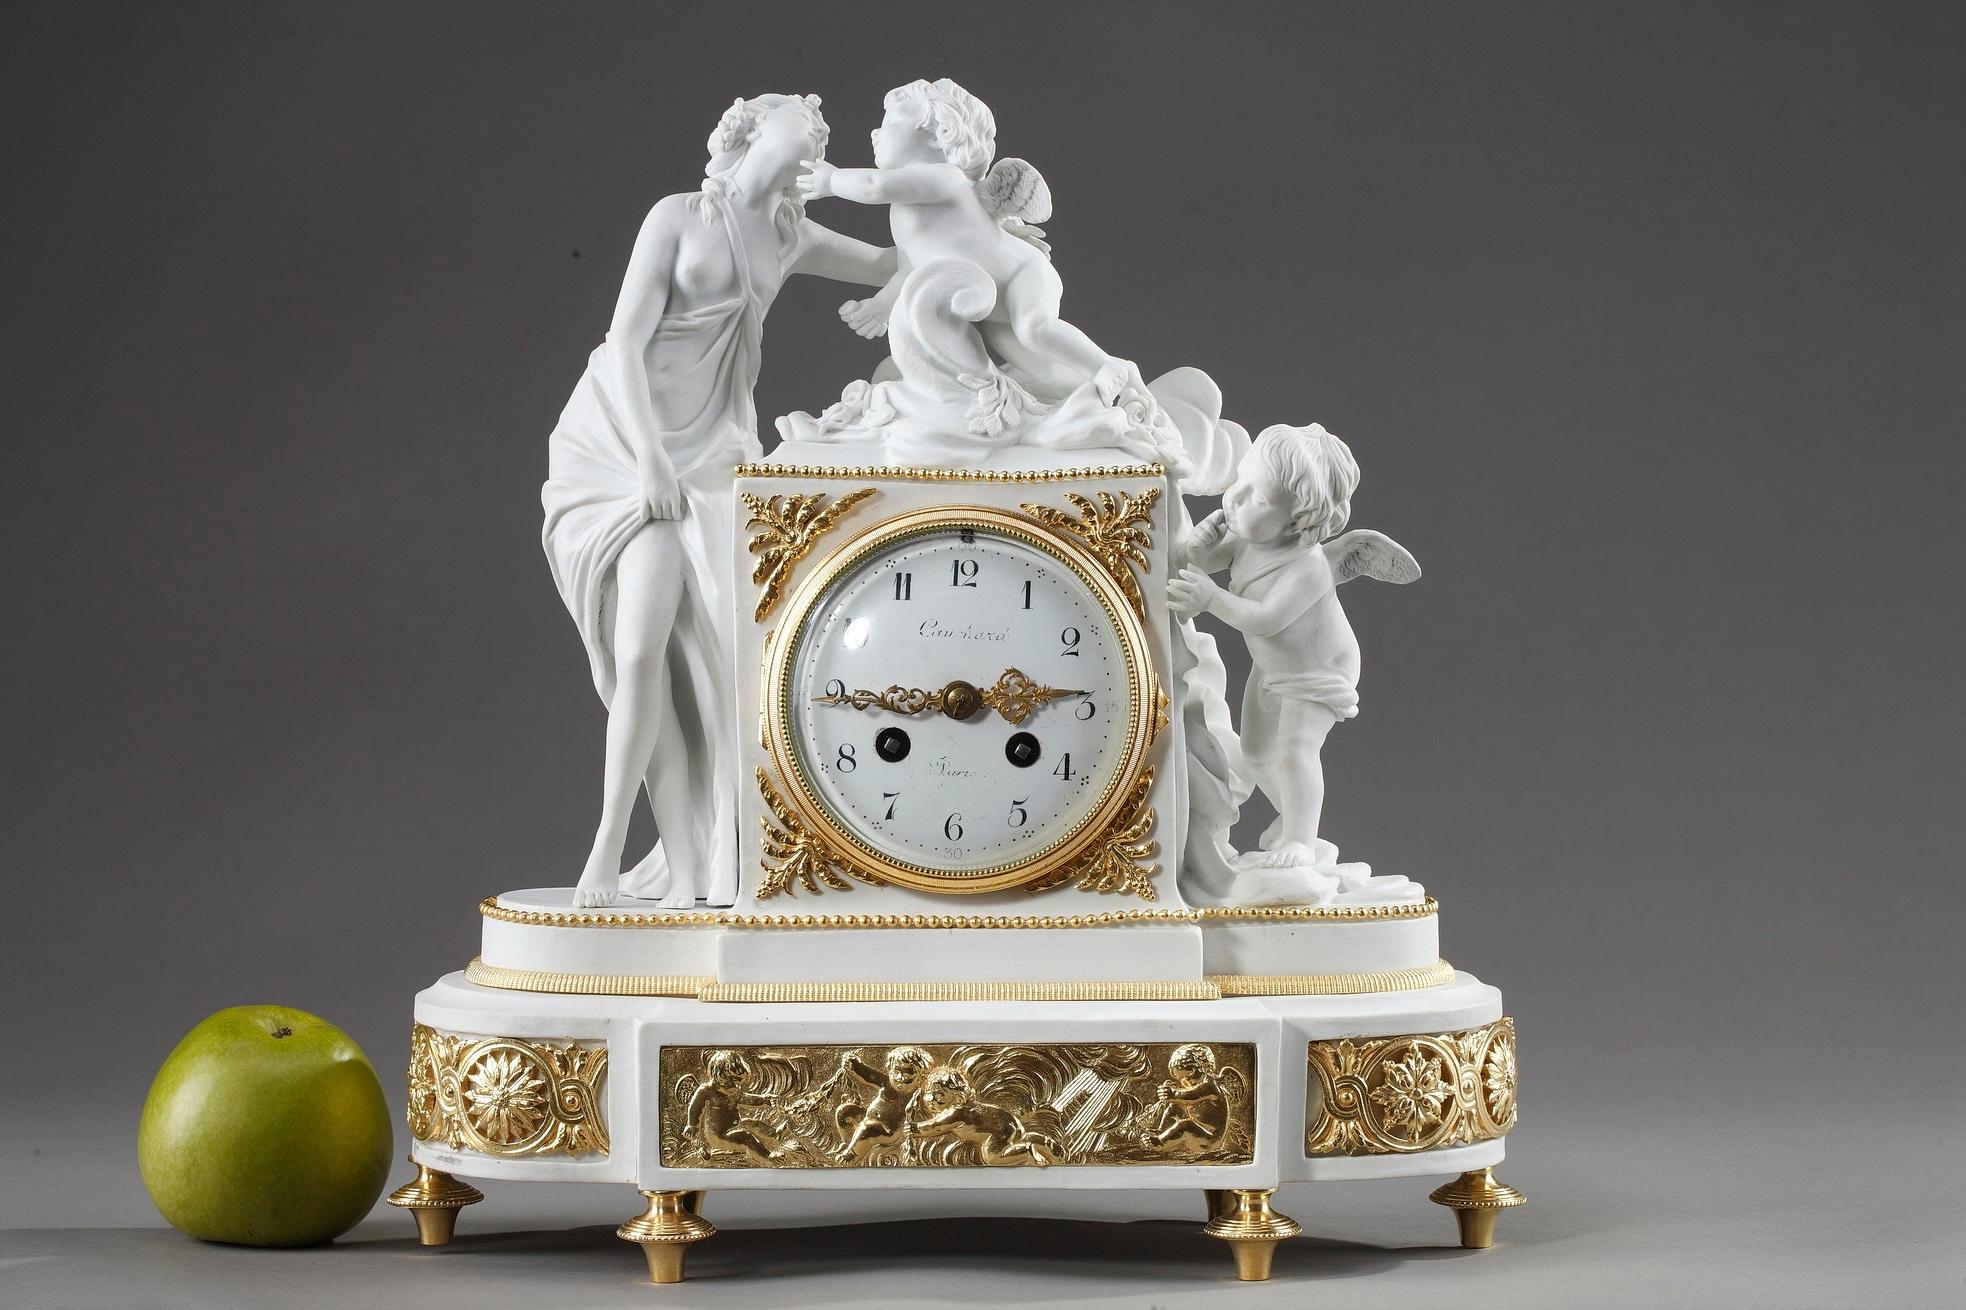 pendule française du XIXe siècle à décor néoclassique. Réalisée en biscuit dans un style Louis XVI, cette exquise horloge de cheminée présente des ornements en bronze doré. Il représente Vénus, la déesse de l'amour, de la beauté et de la fertilité